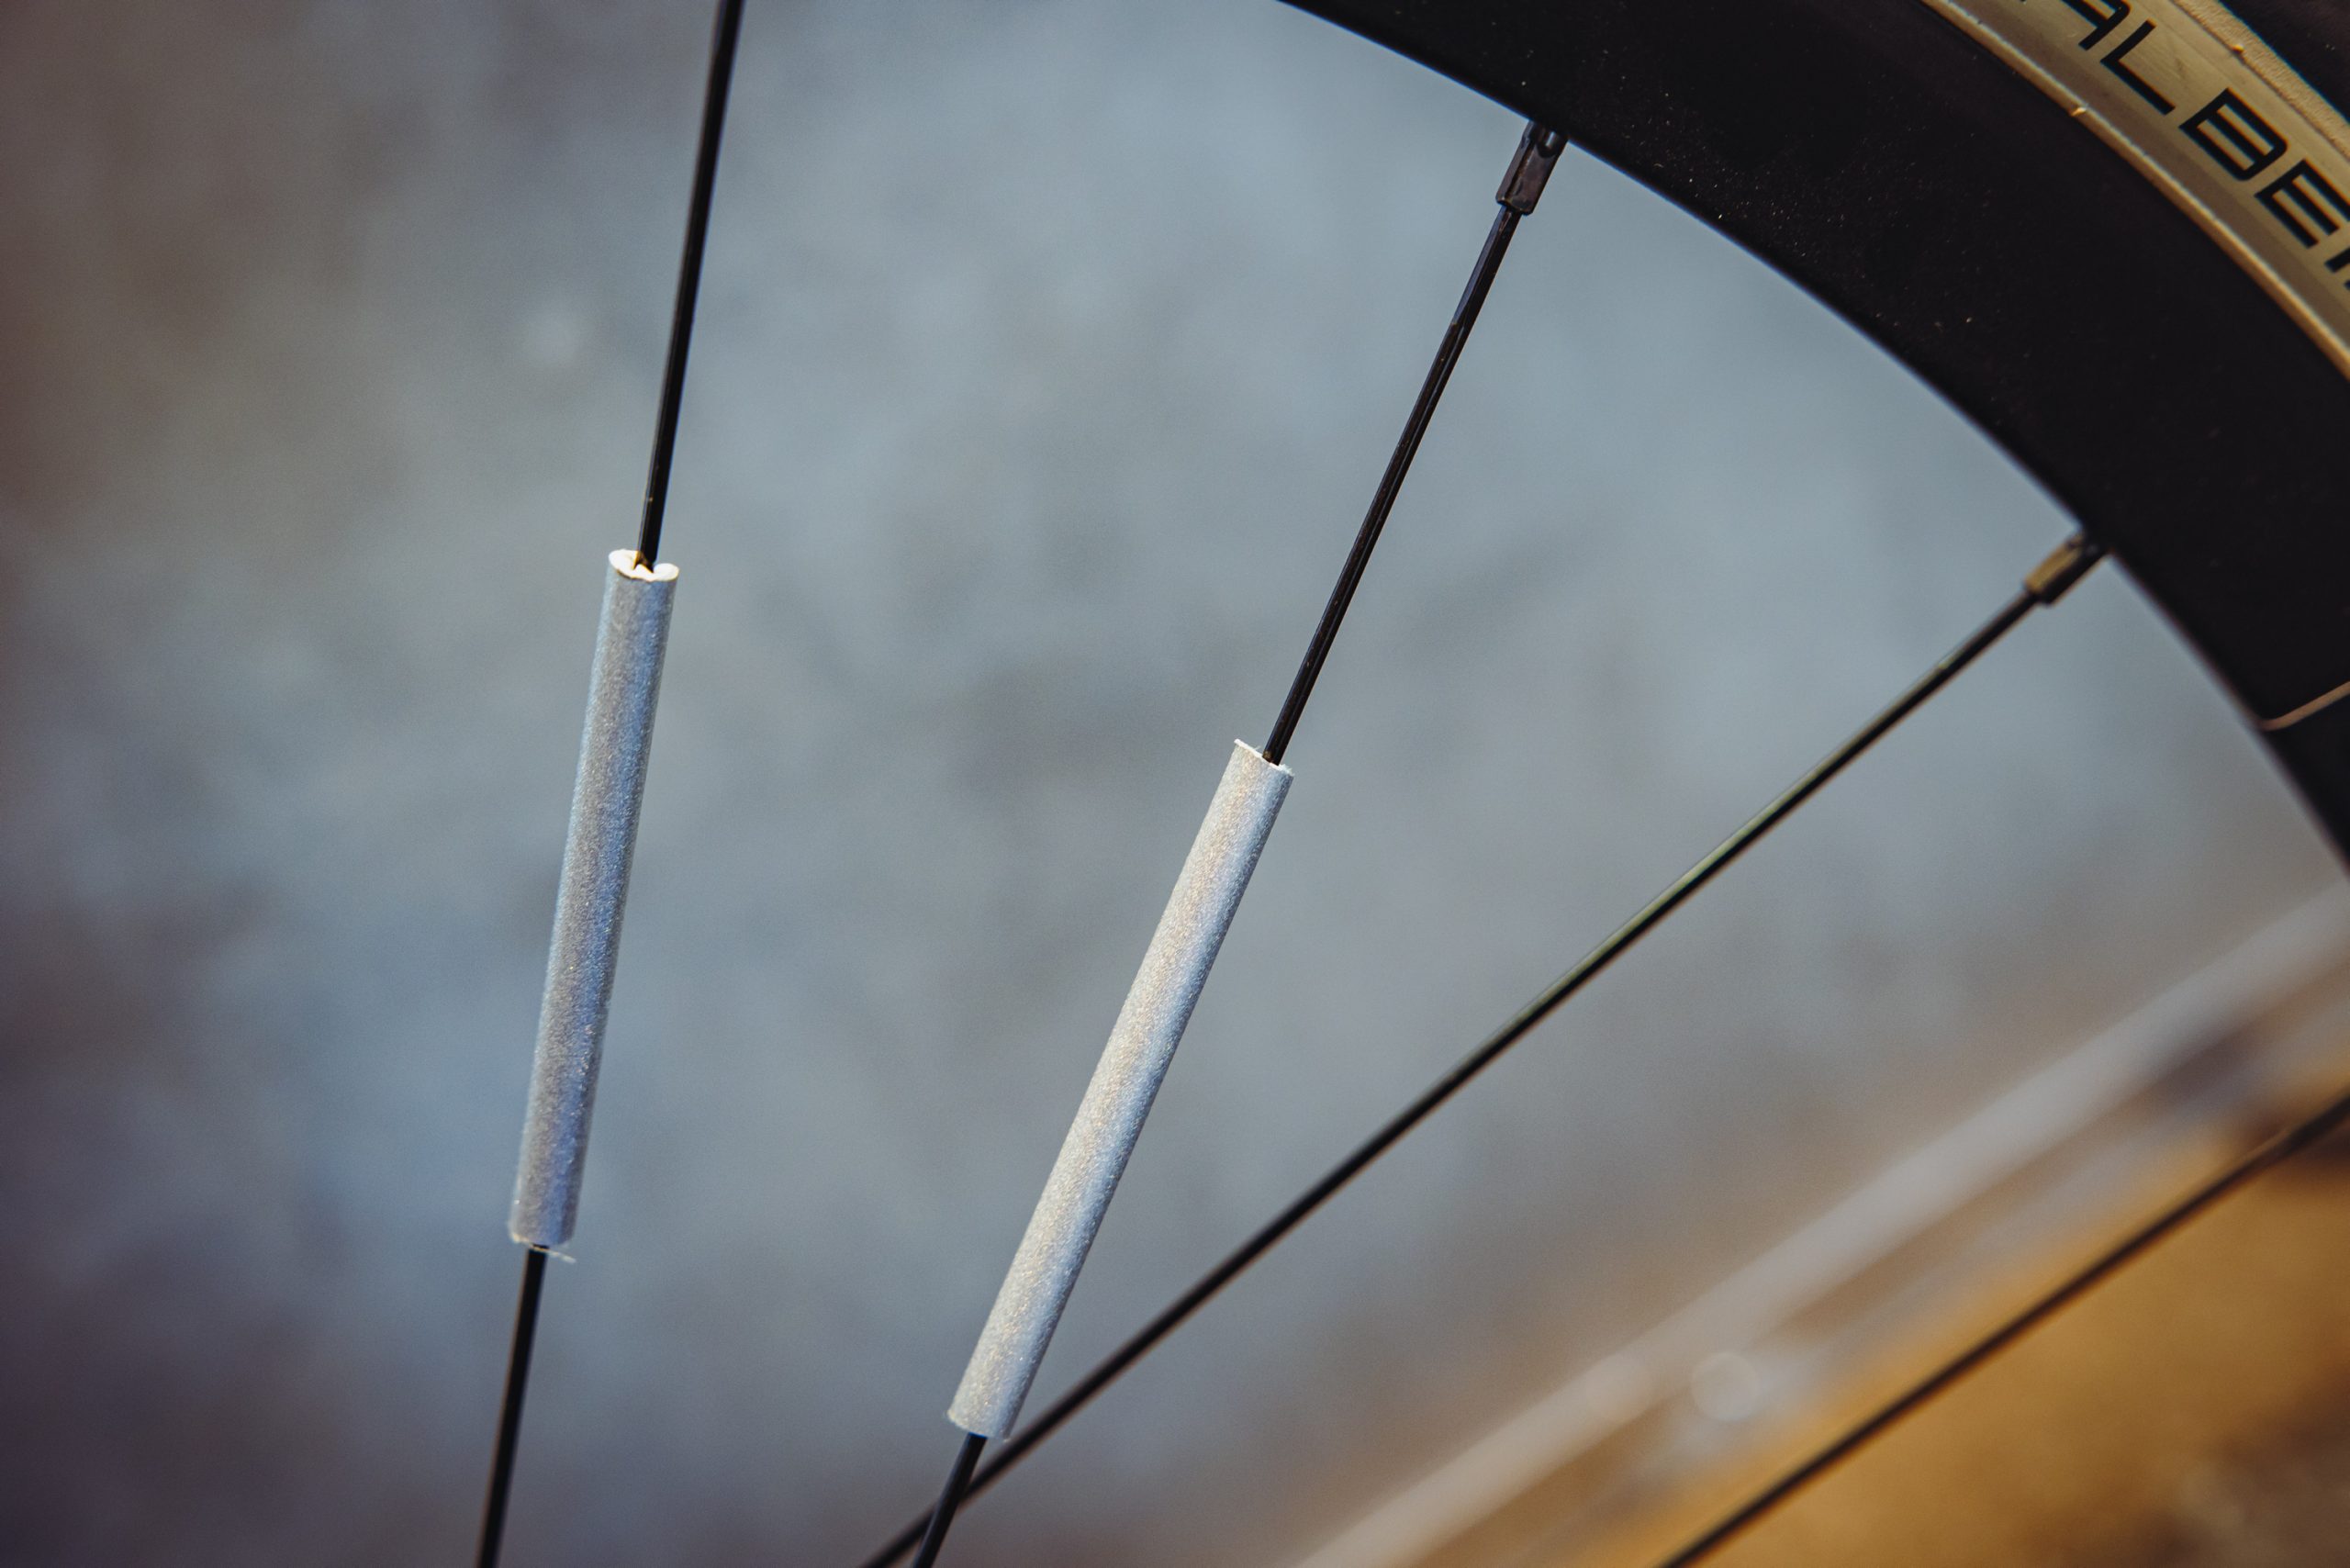 Reflektoren in den Speichen lassen den Radfahrer in der Dunkelheit sichtbarer werden.